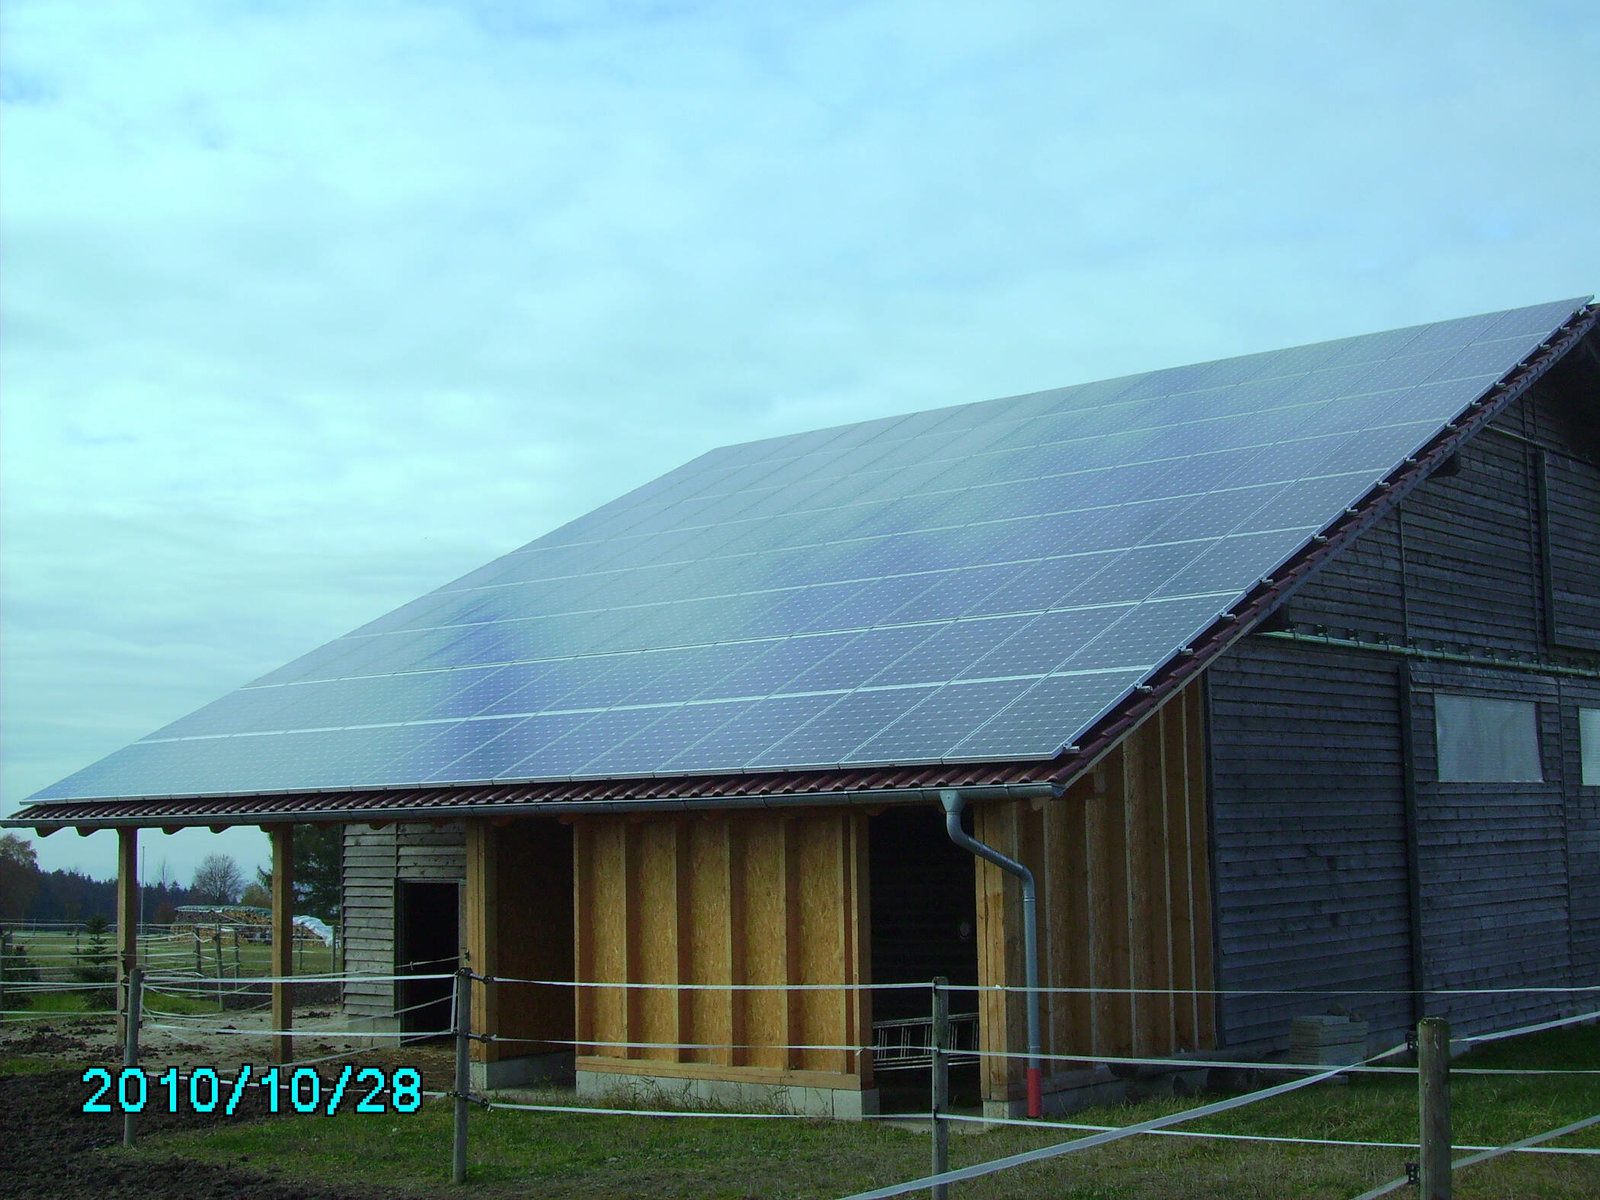 Solar Panele auf Hüttendach